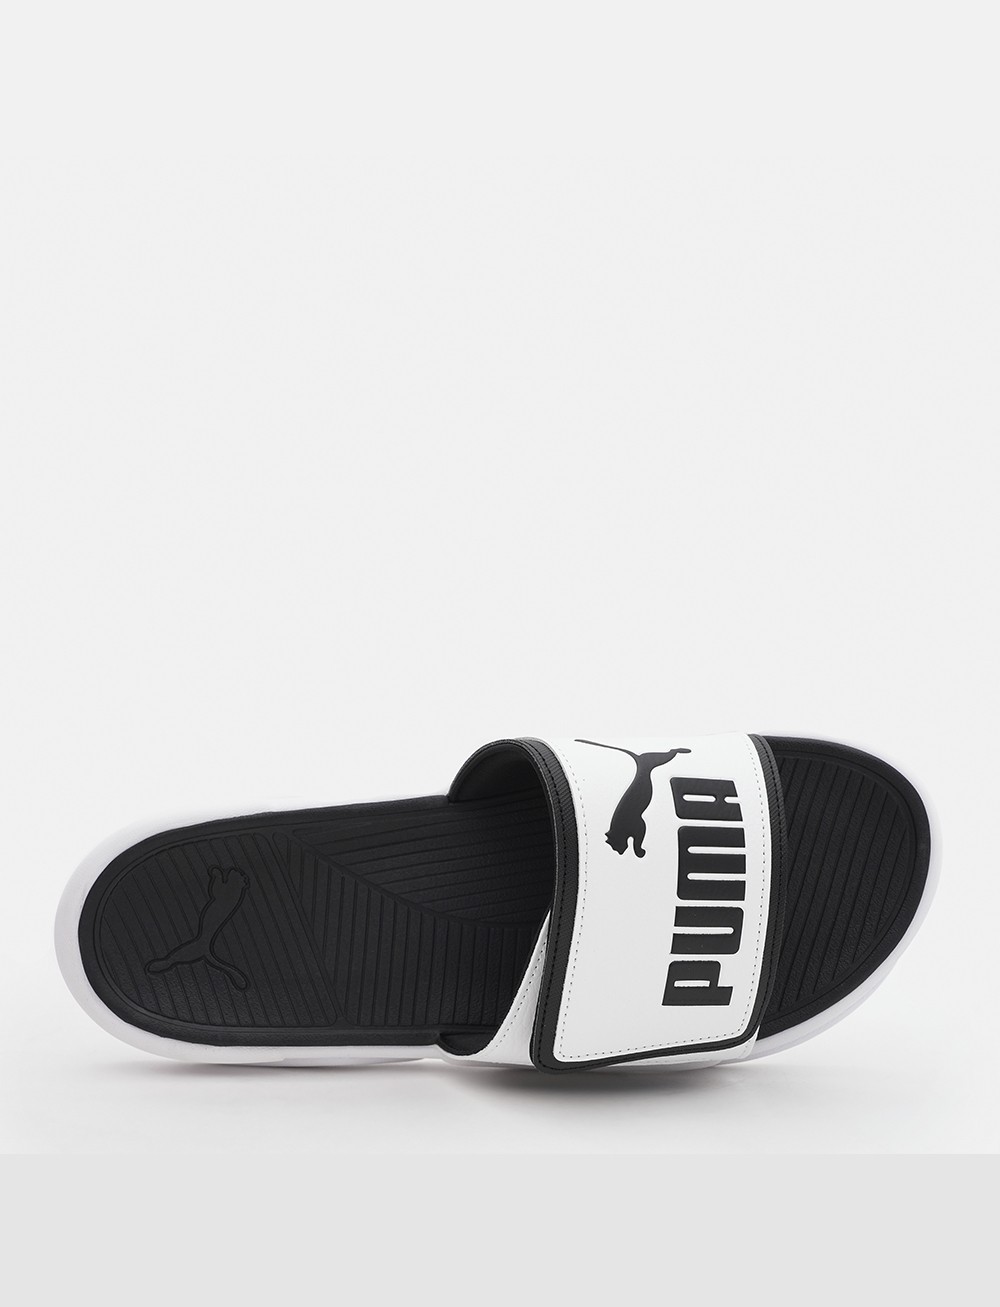 Пляжная обувь мужская Puma Royalcat Comfort белая 37228002 изображение 6